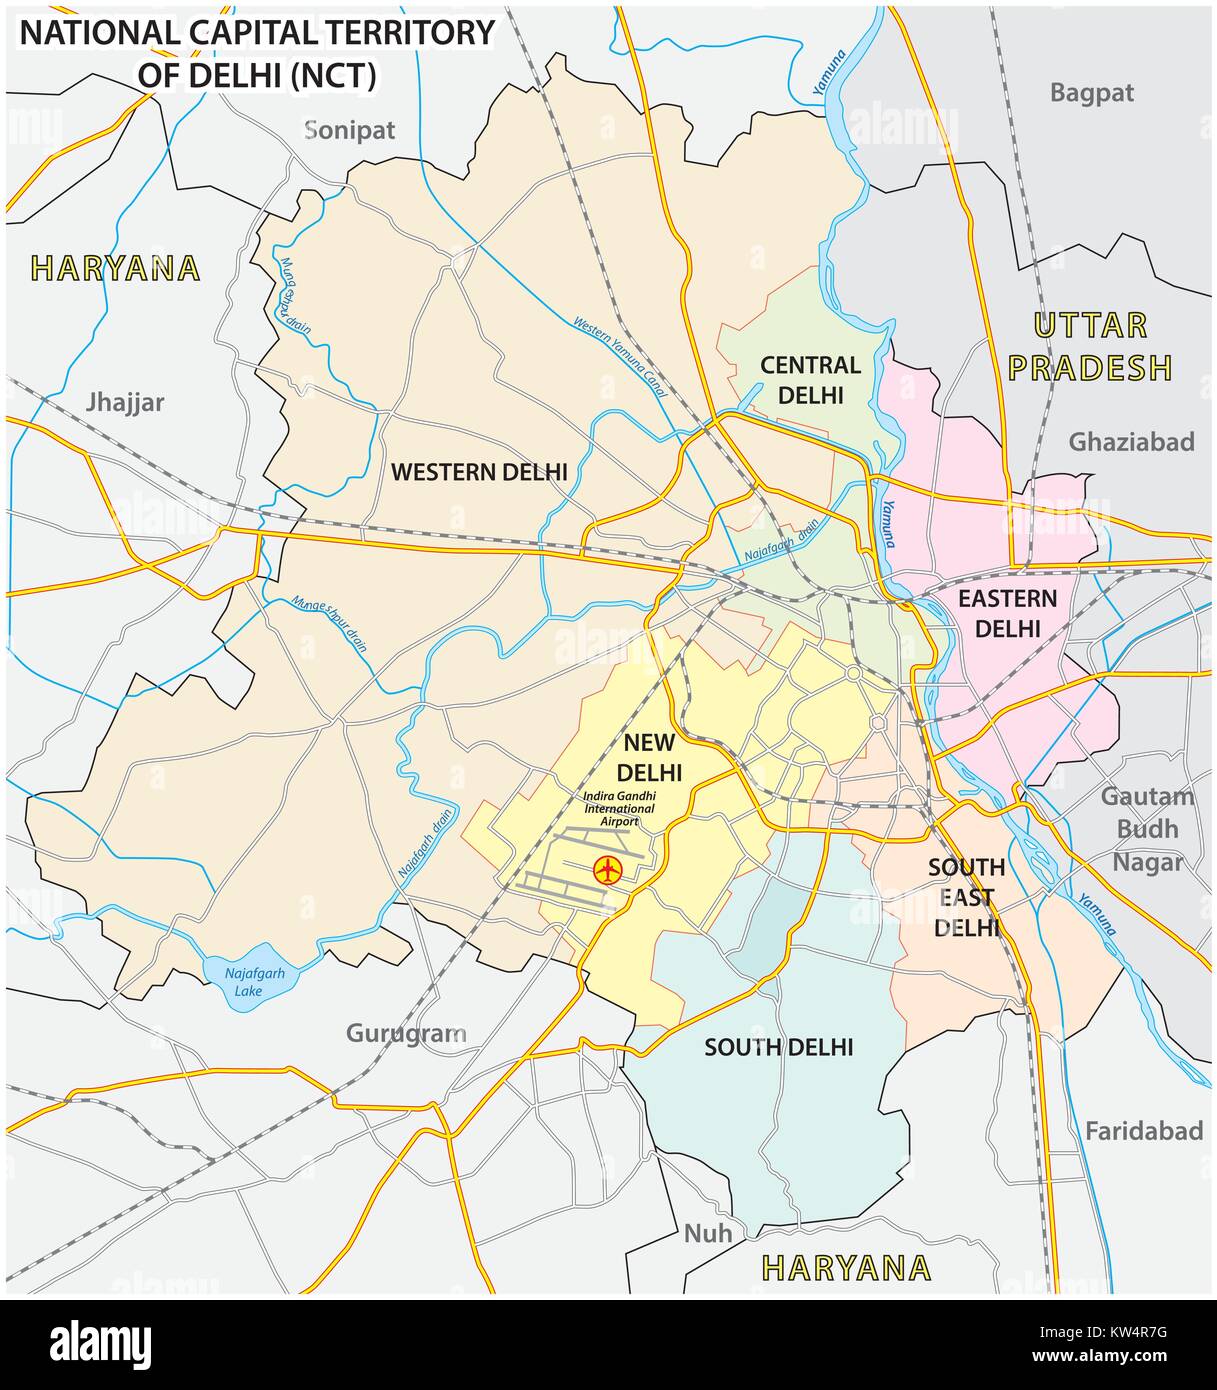 Administrativo, político y mapa callejero del territorio de la Capital Nacional de Delhi (GNC) Ilustración del Vector